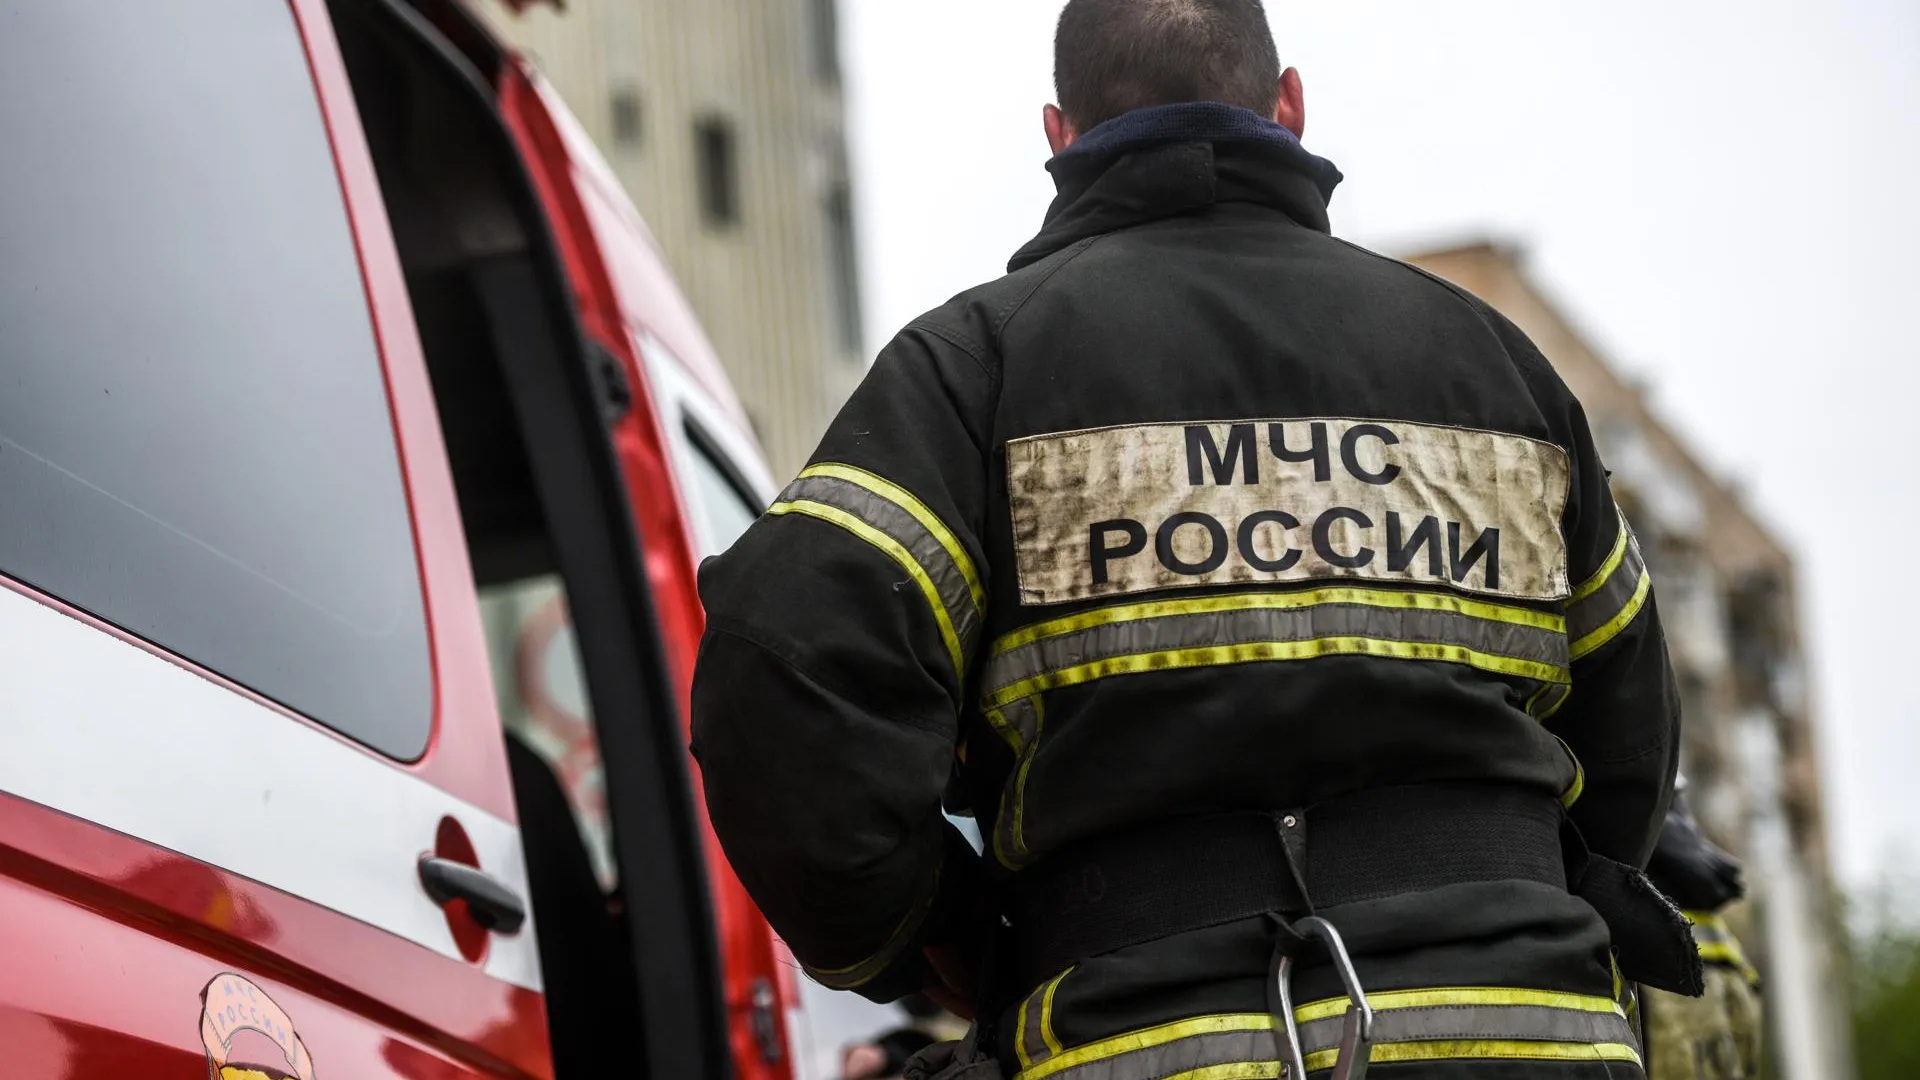 Шесть человек погибли при пожаре в хостеле в Подмосковье